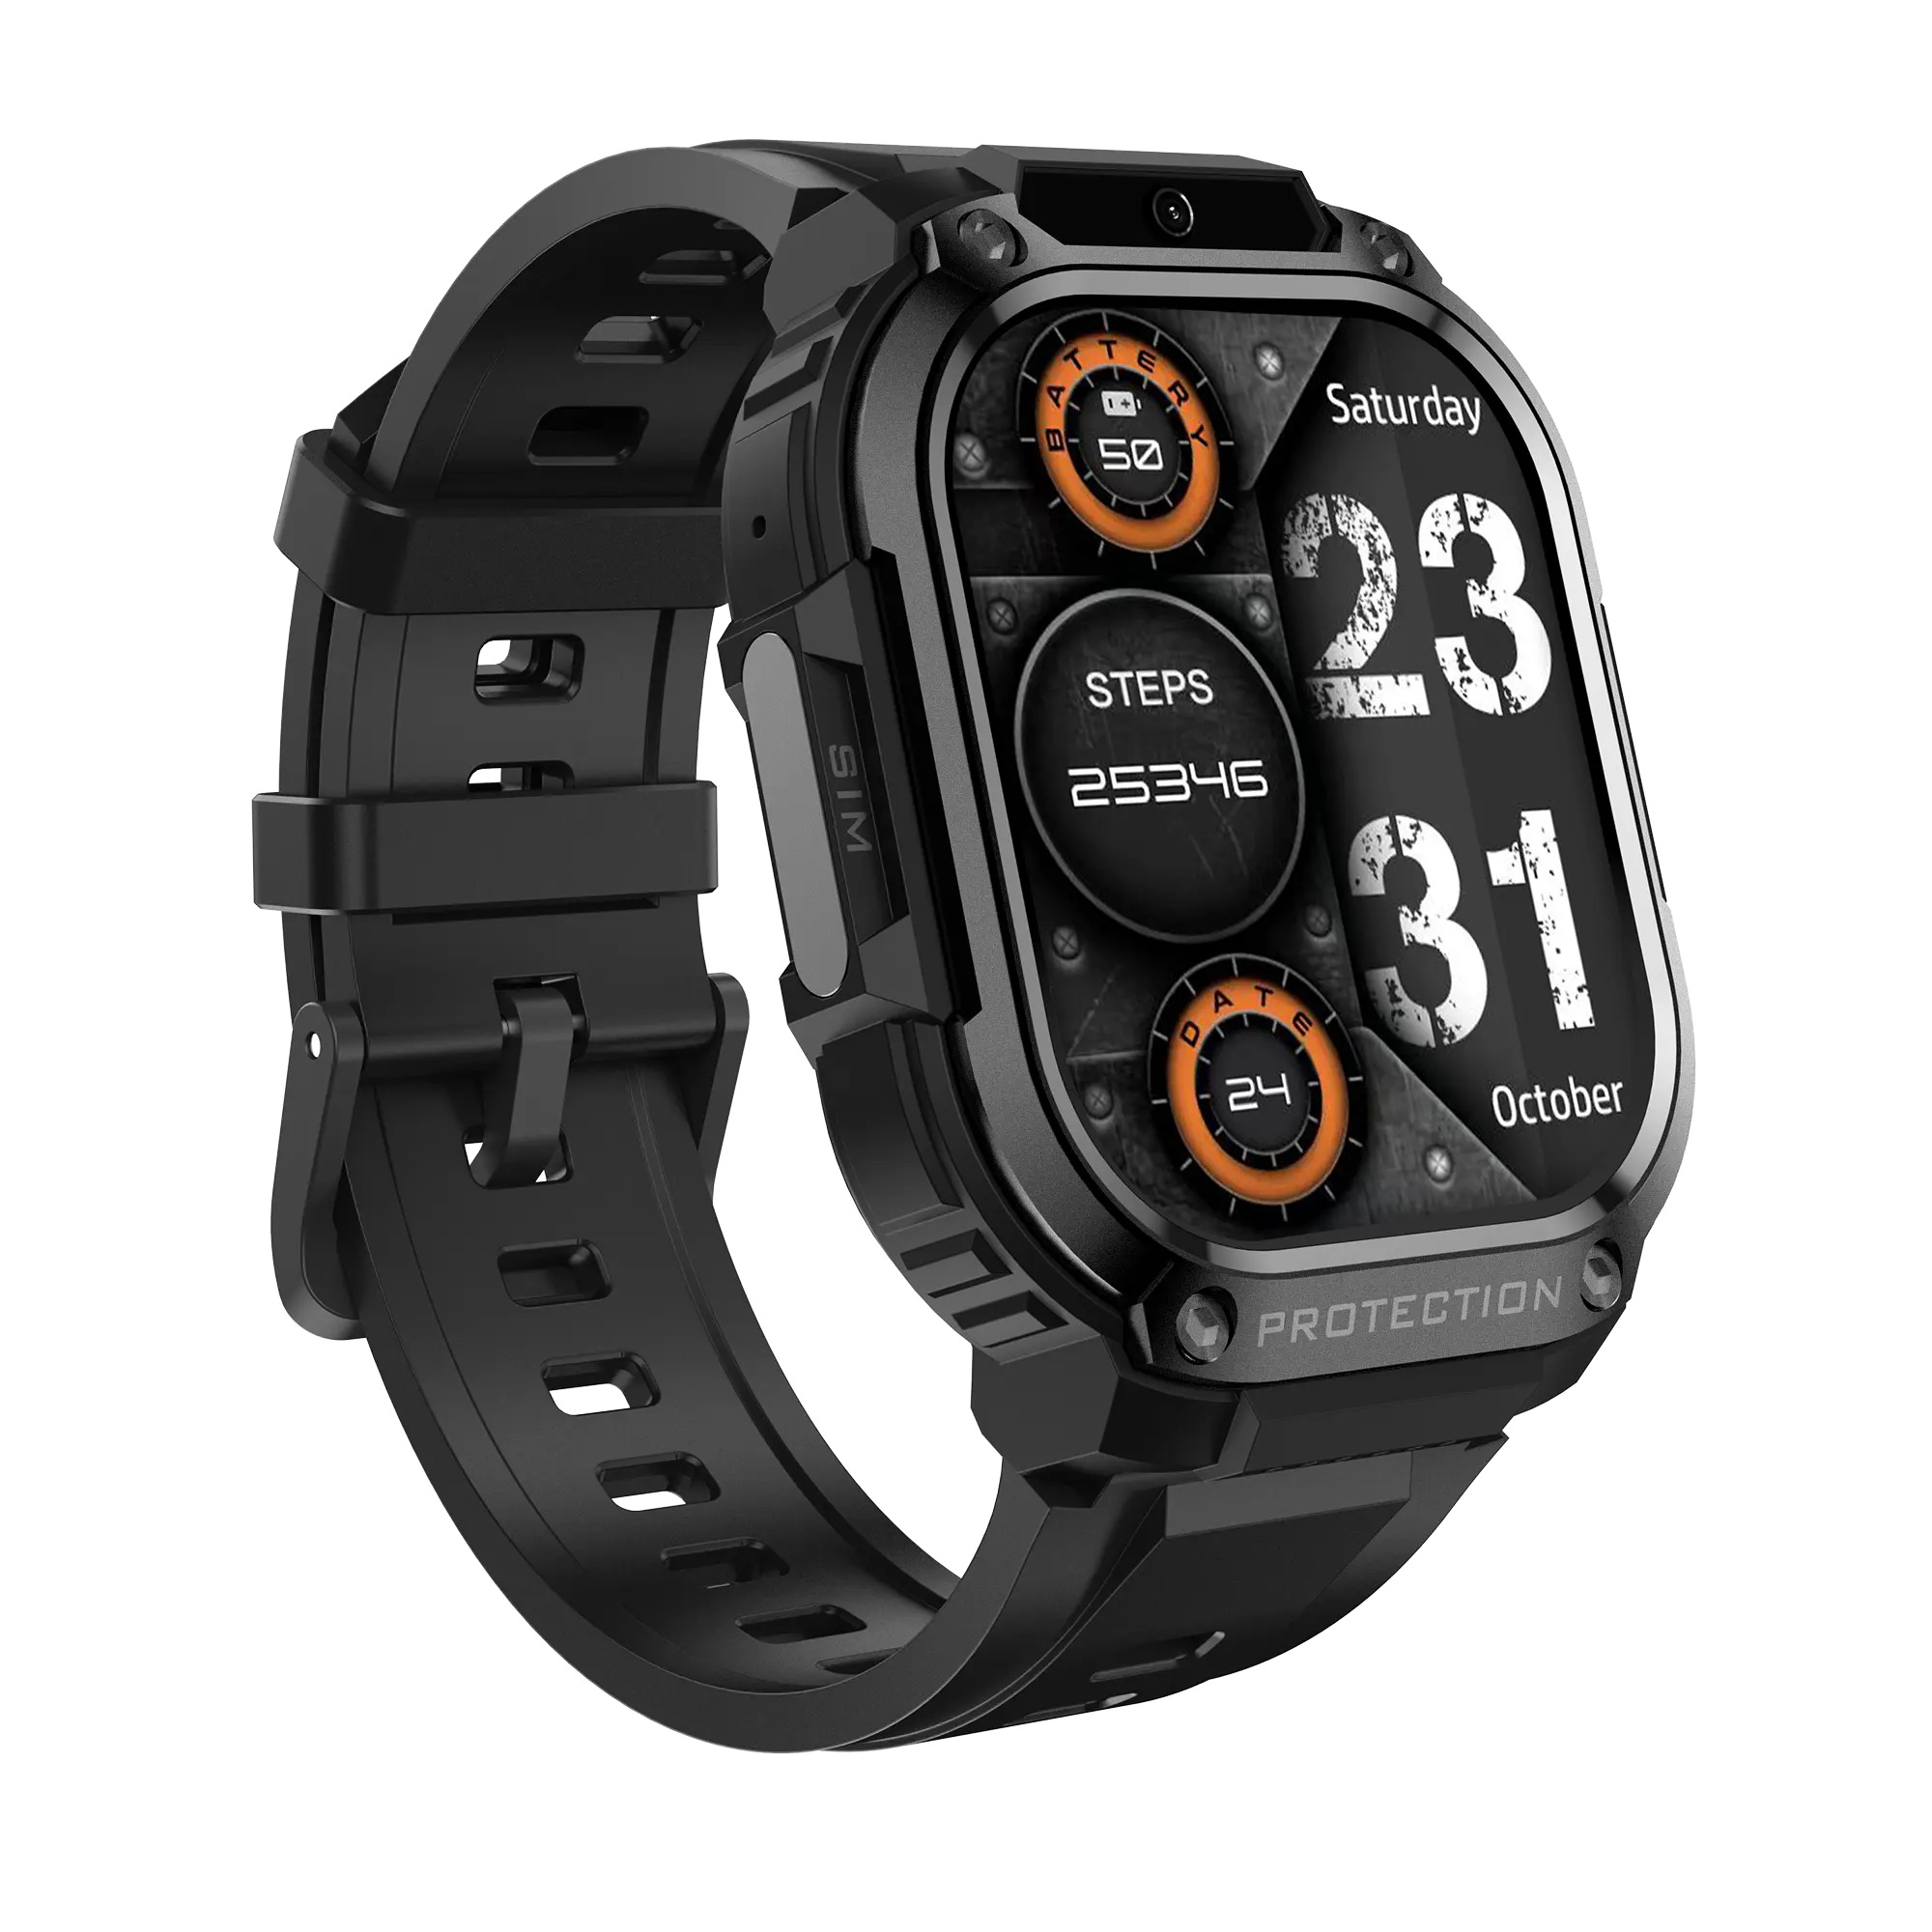 Venda quente 4G Chamada Smartwatch Navegação GPS WIFI Câmera Fitness Smart Watch com Cartão SIM